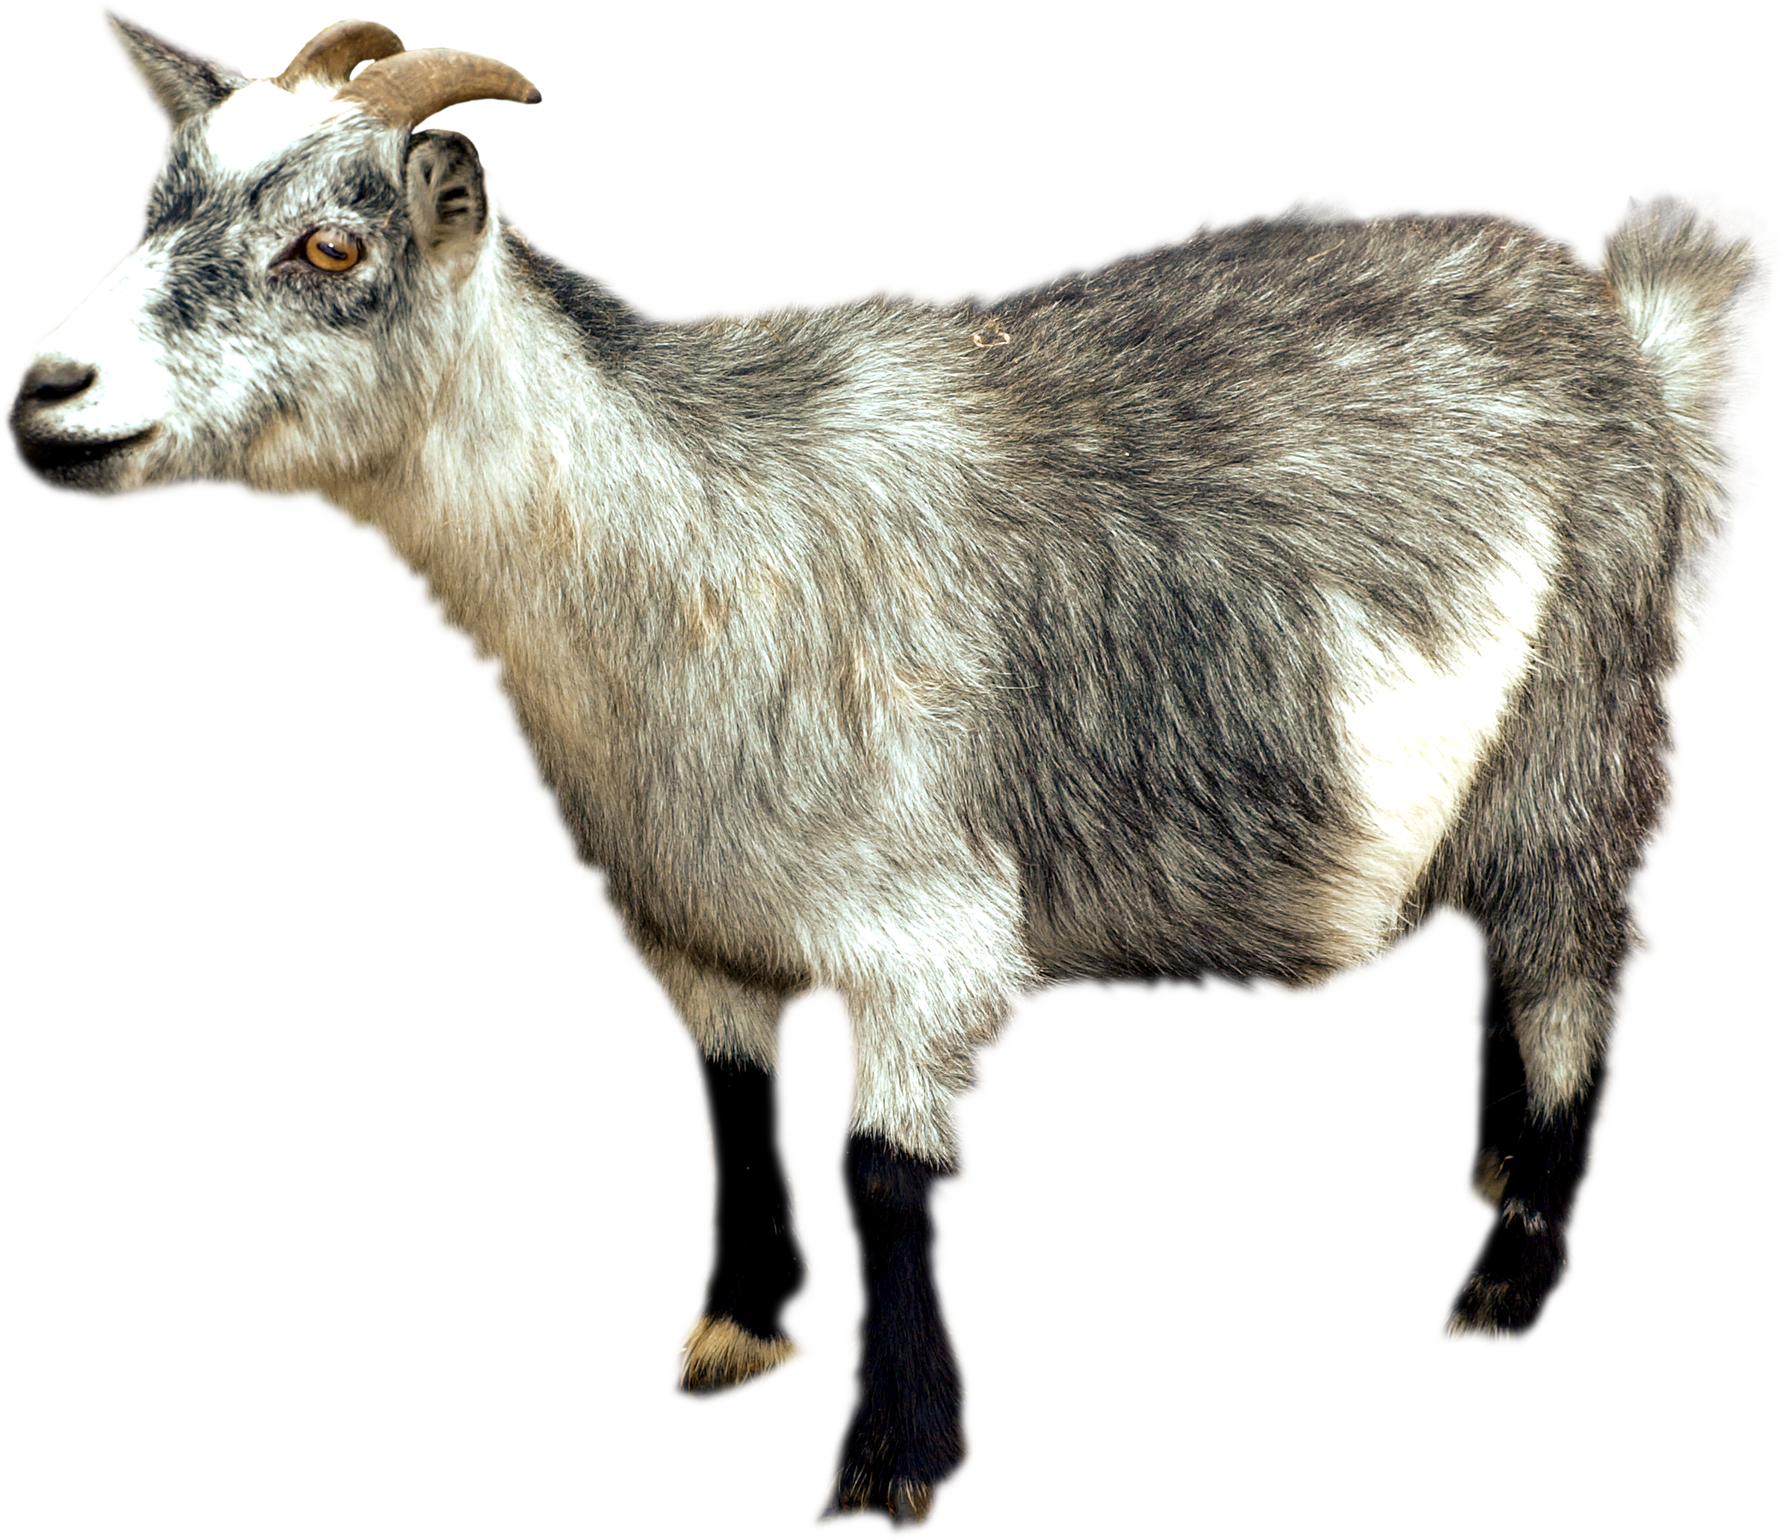 Goat PNG HD